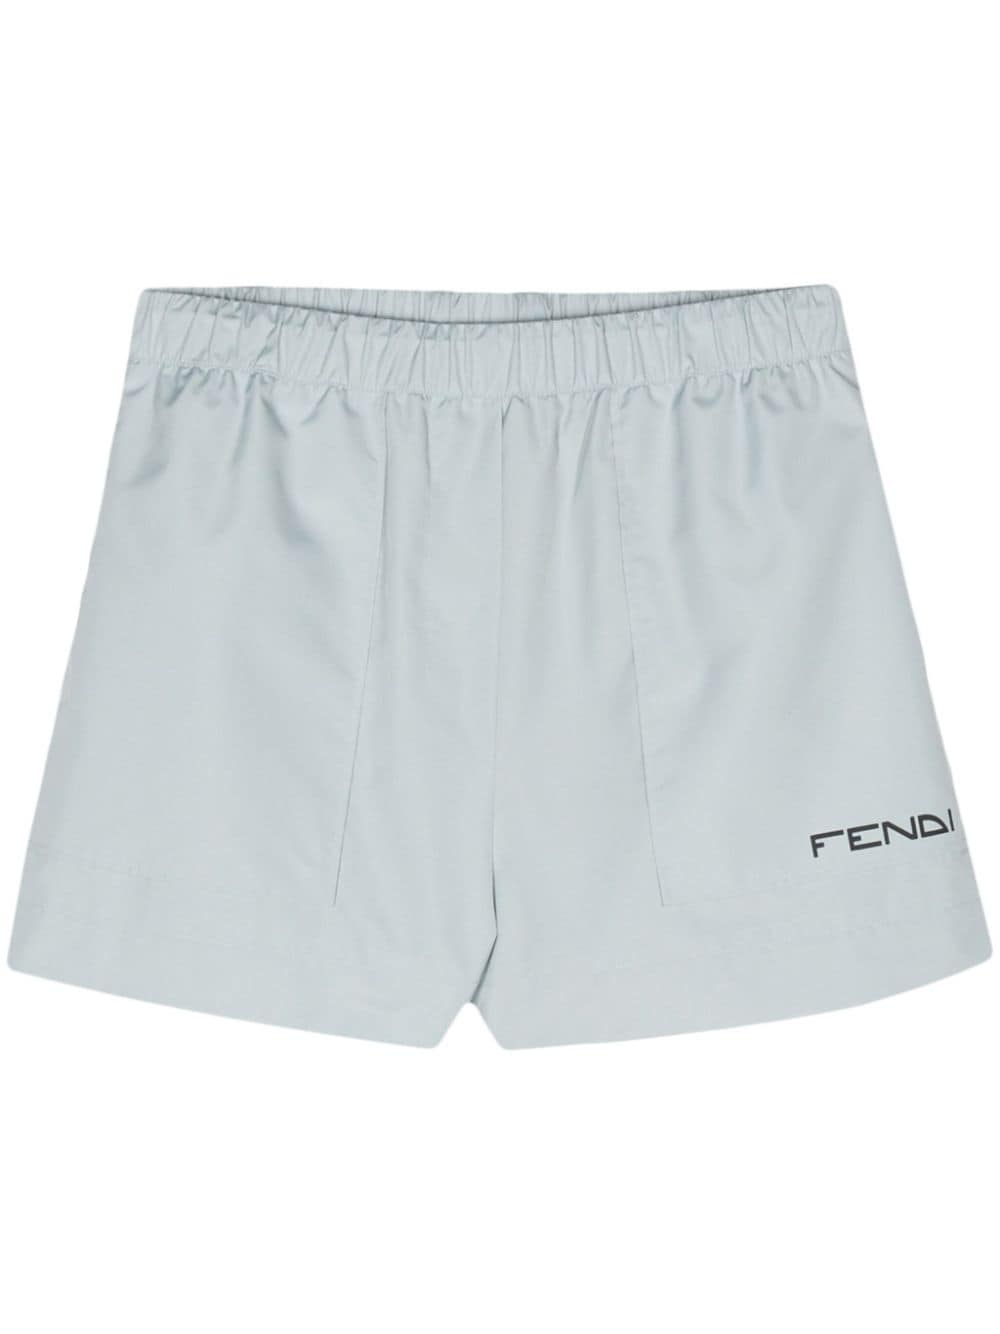 Fendi Nylon Shorts In Blue